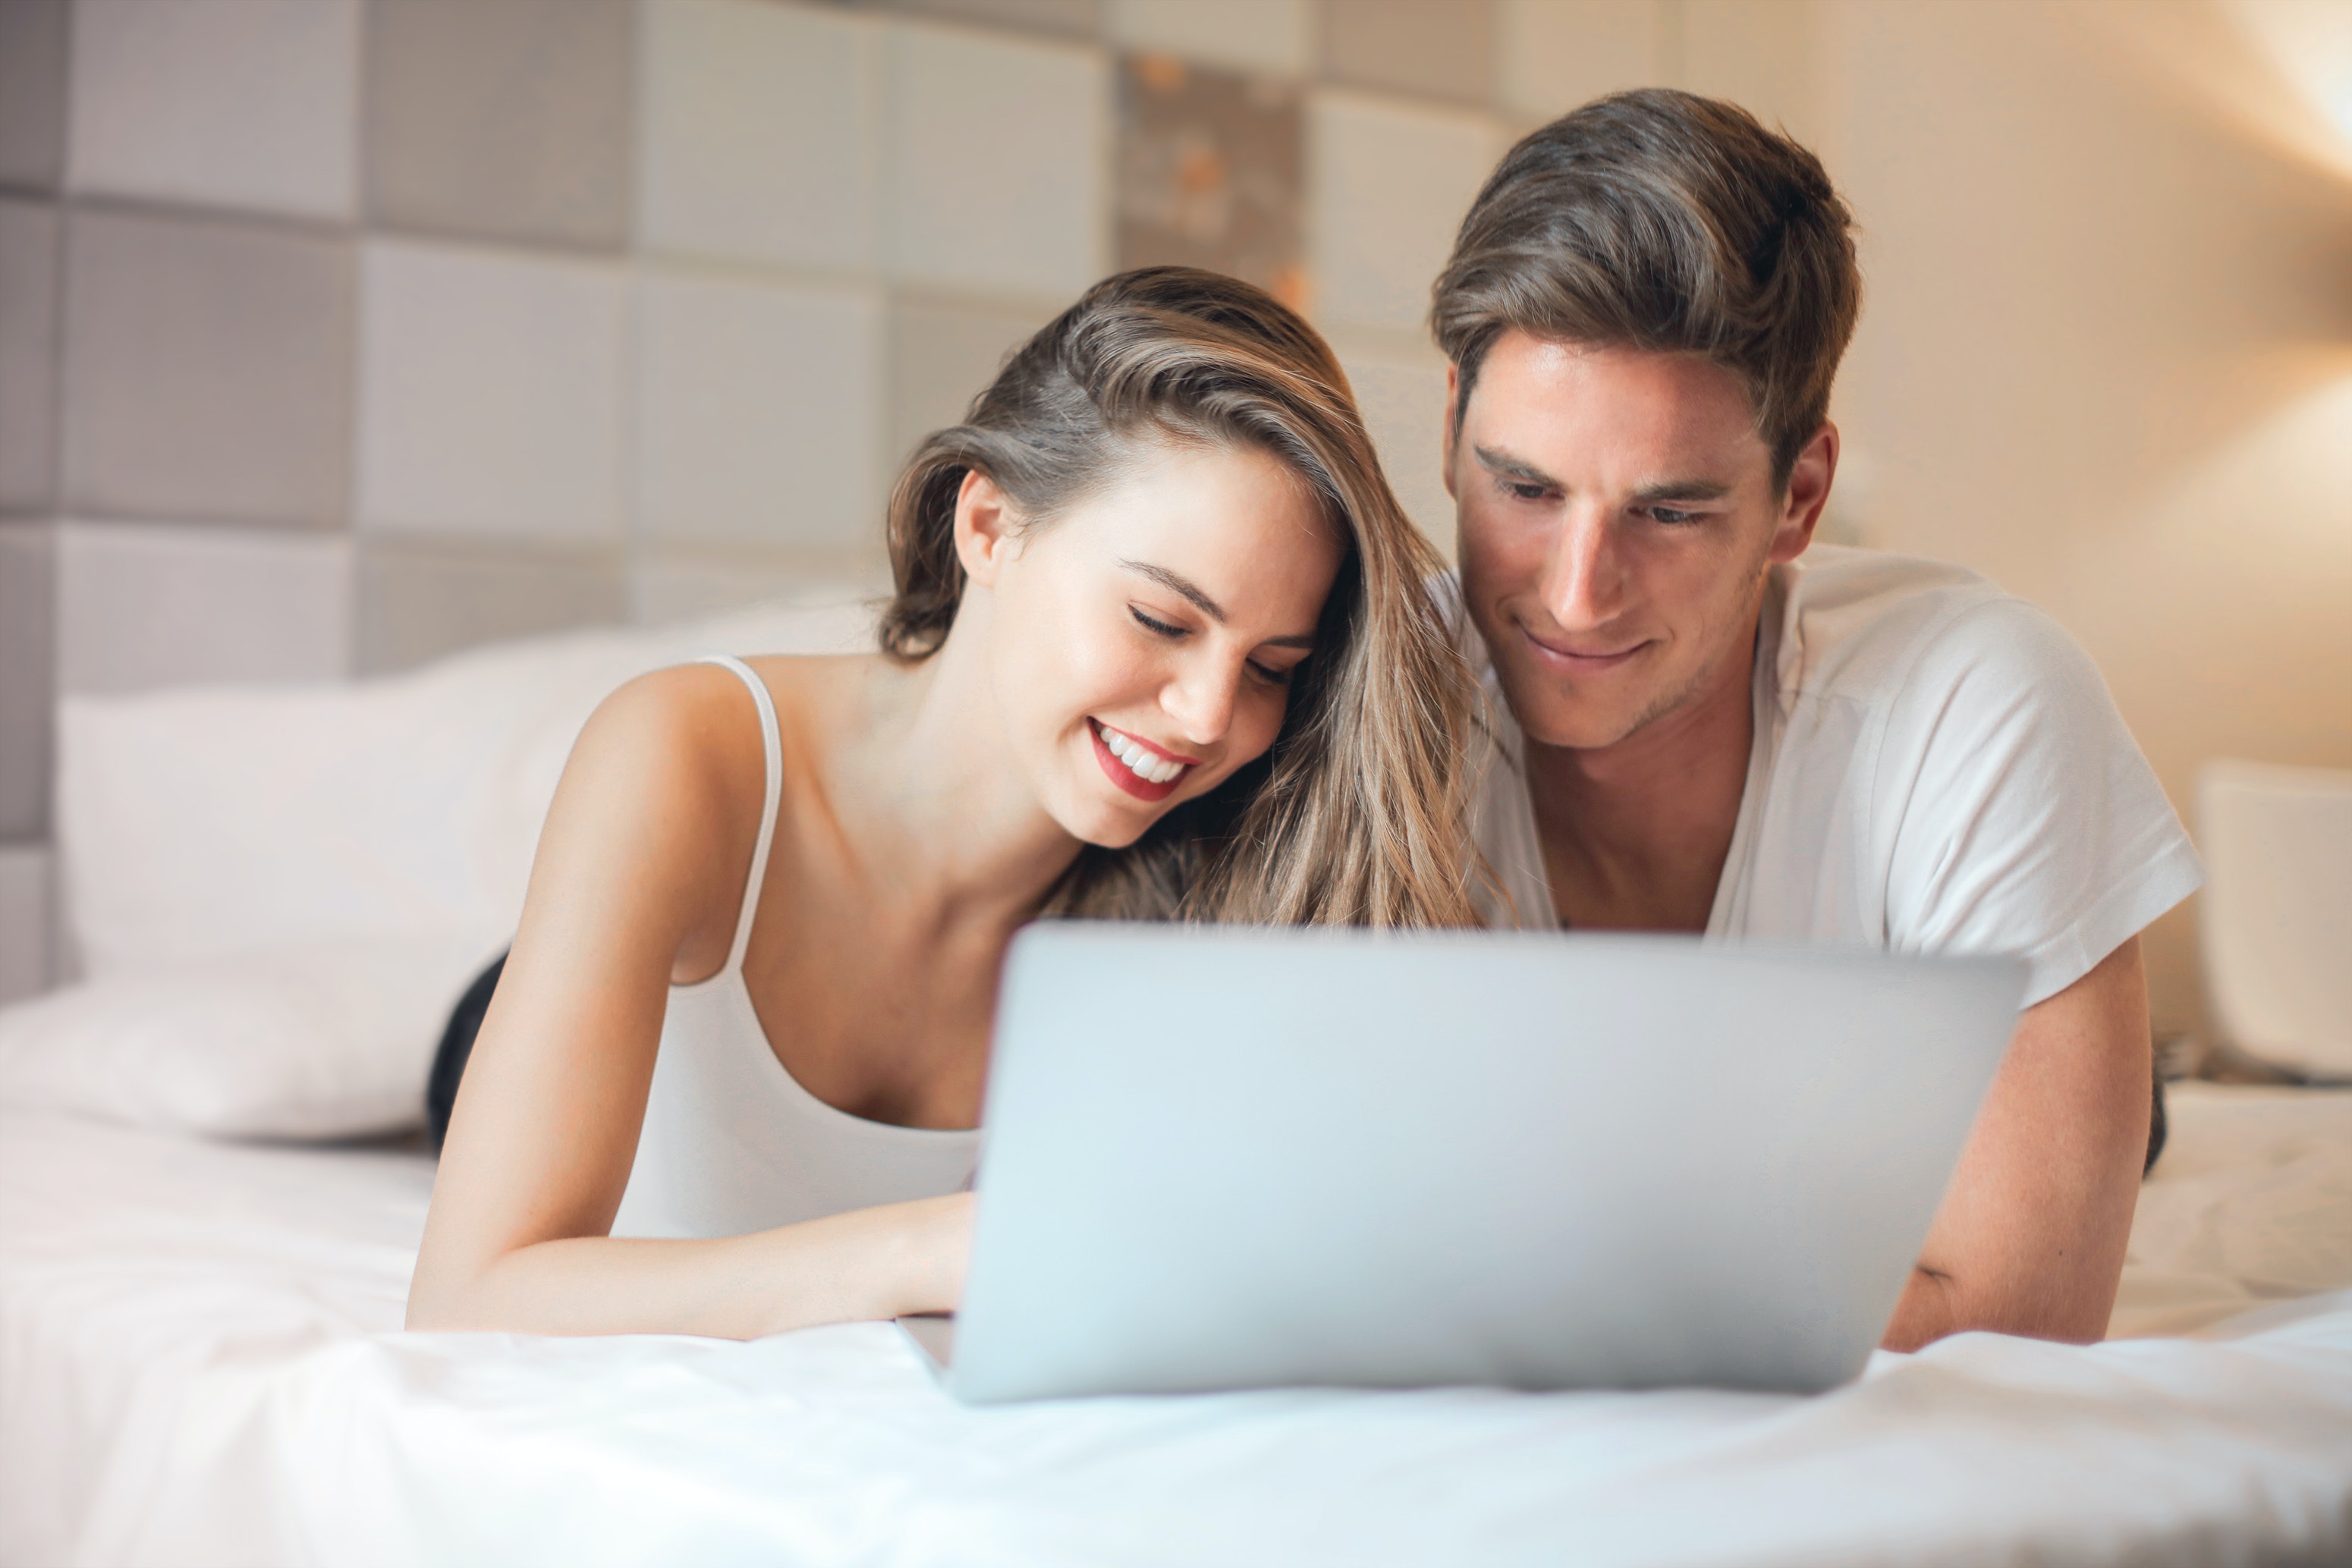 Společné sledování porna může být zábavnou předehrou, ujistěte se však, že vám i vašemu partnerovi tato aktivita vyhovuje